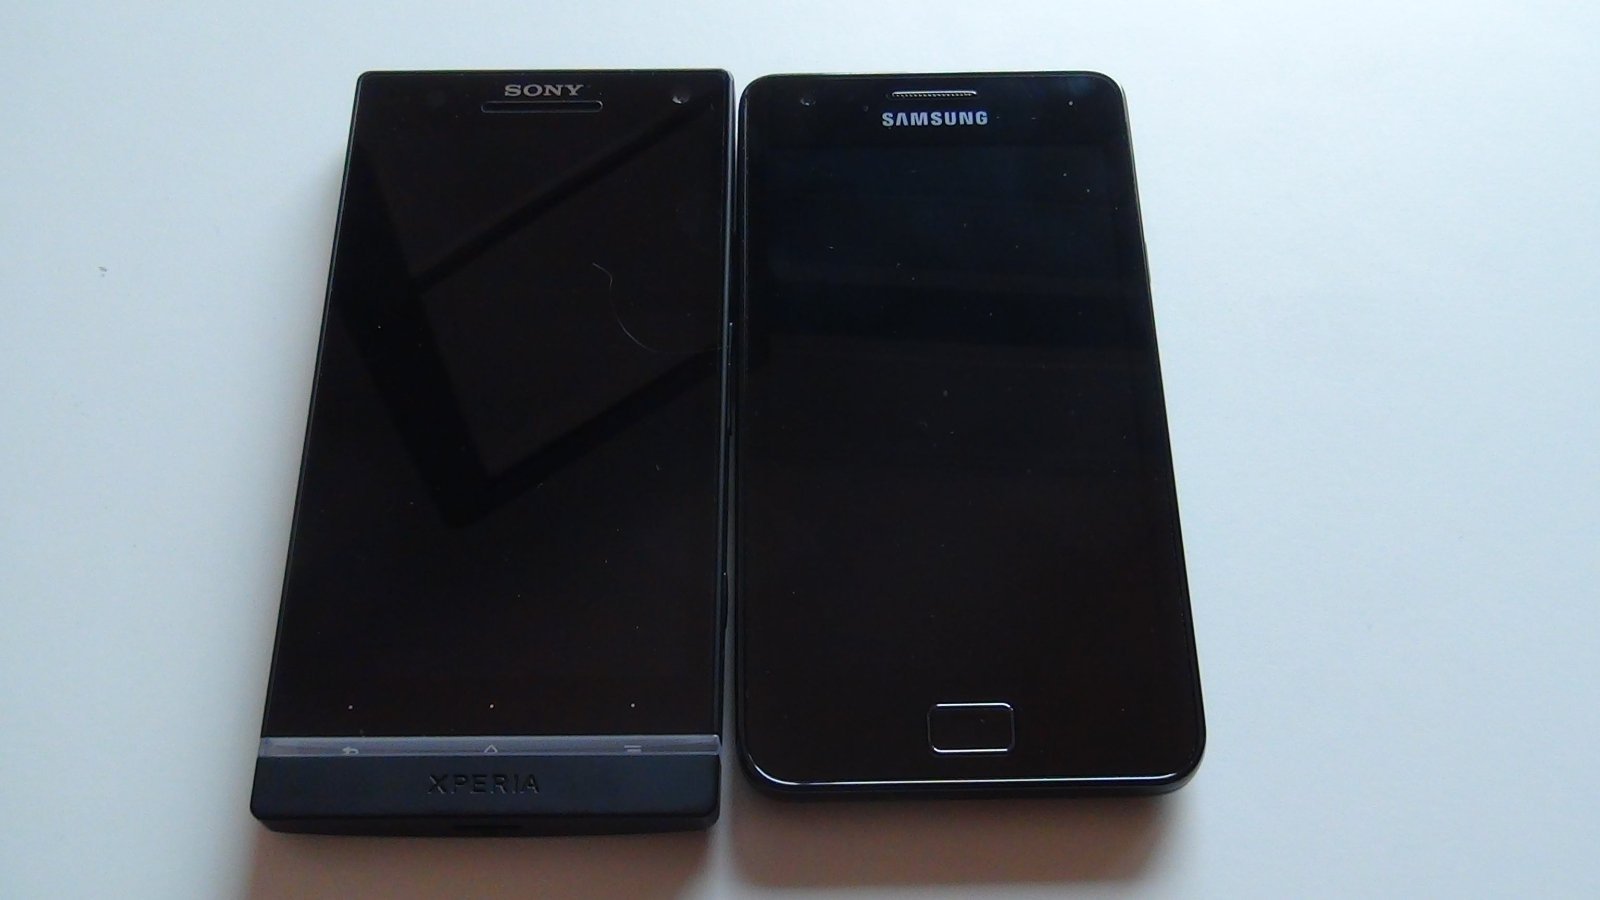 Comparamos en vídeo el Samsung Galaxy S II y el Sony Xperia S